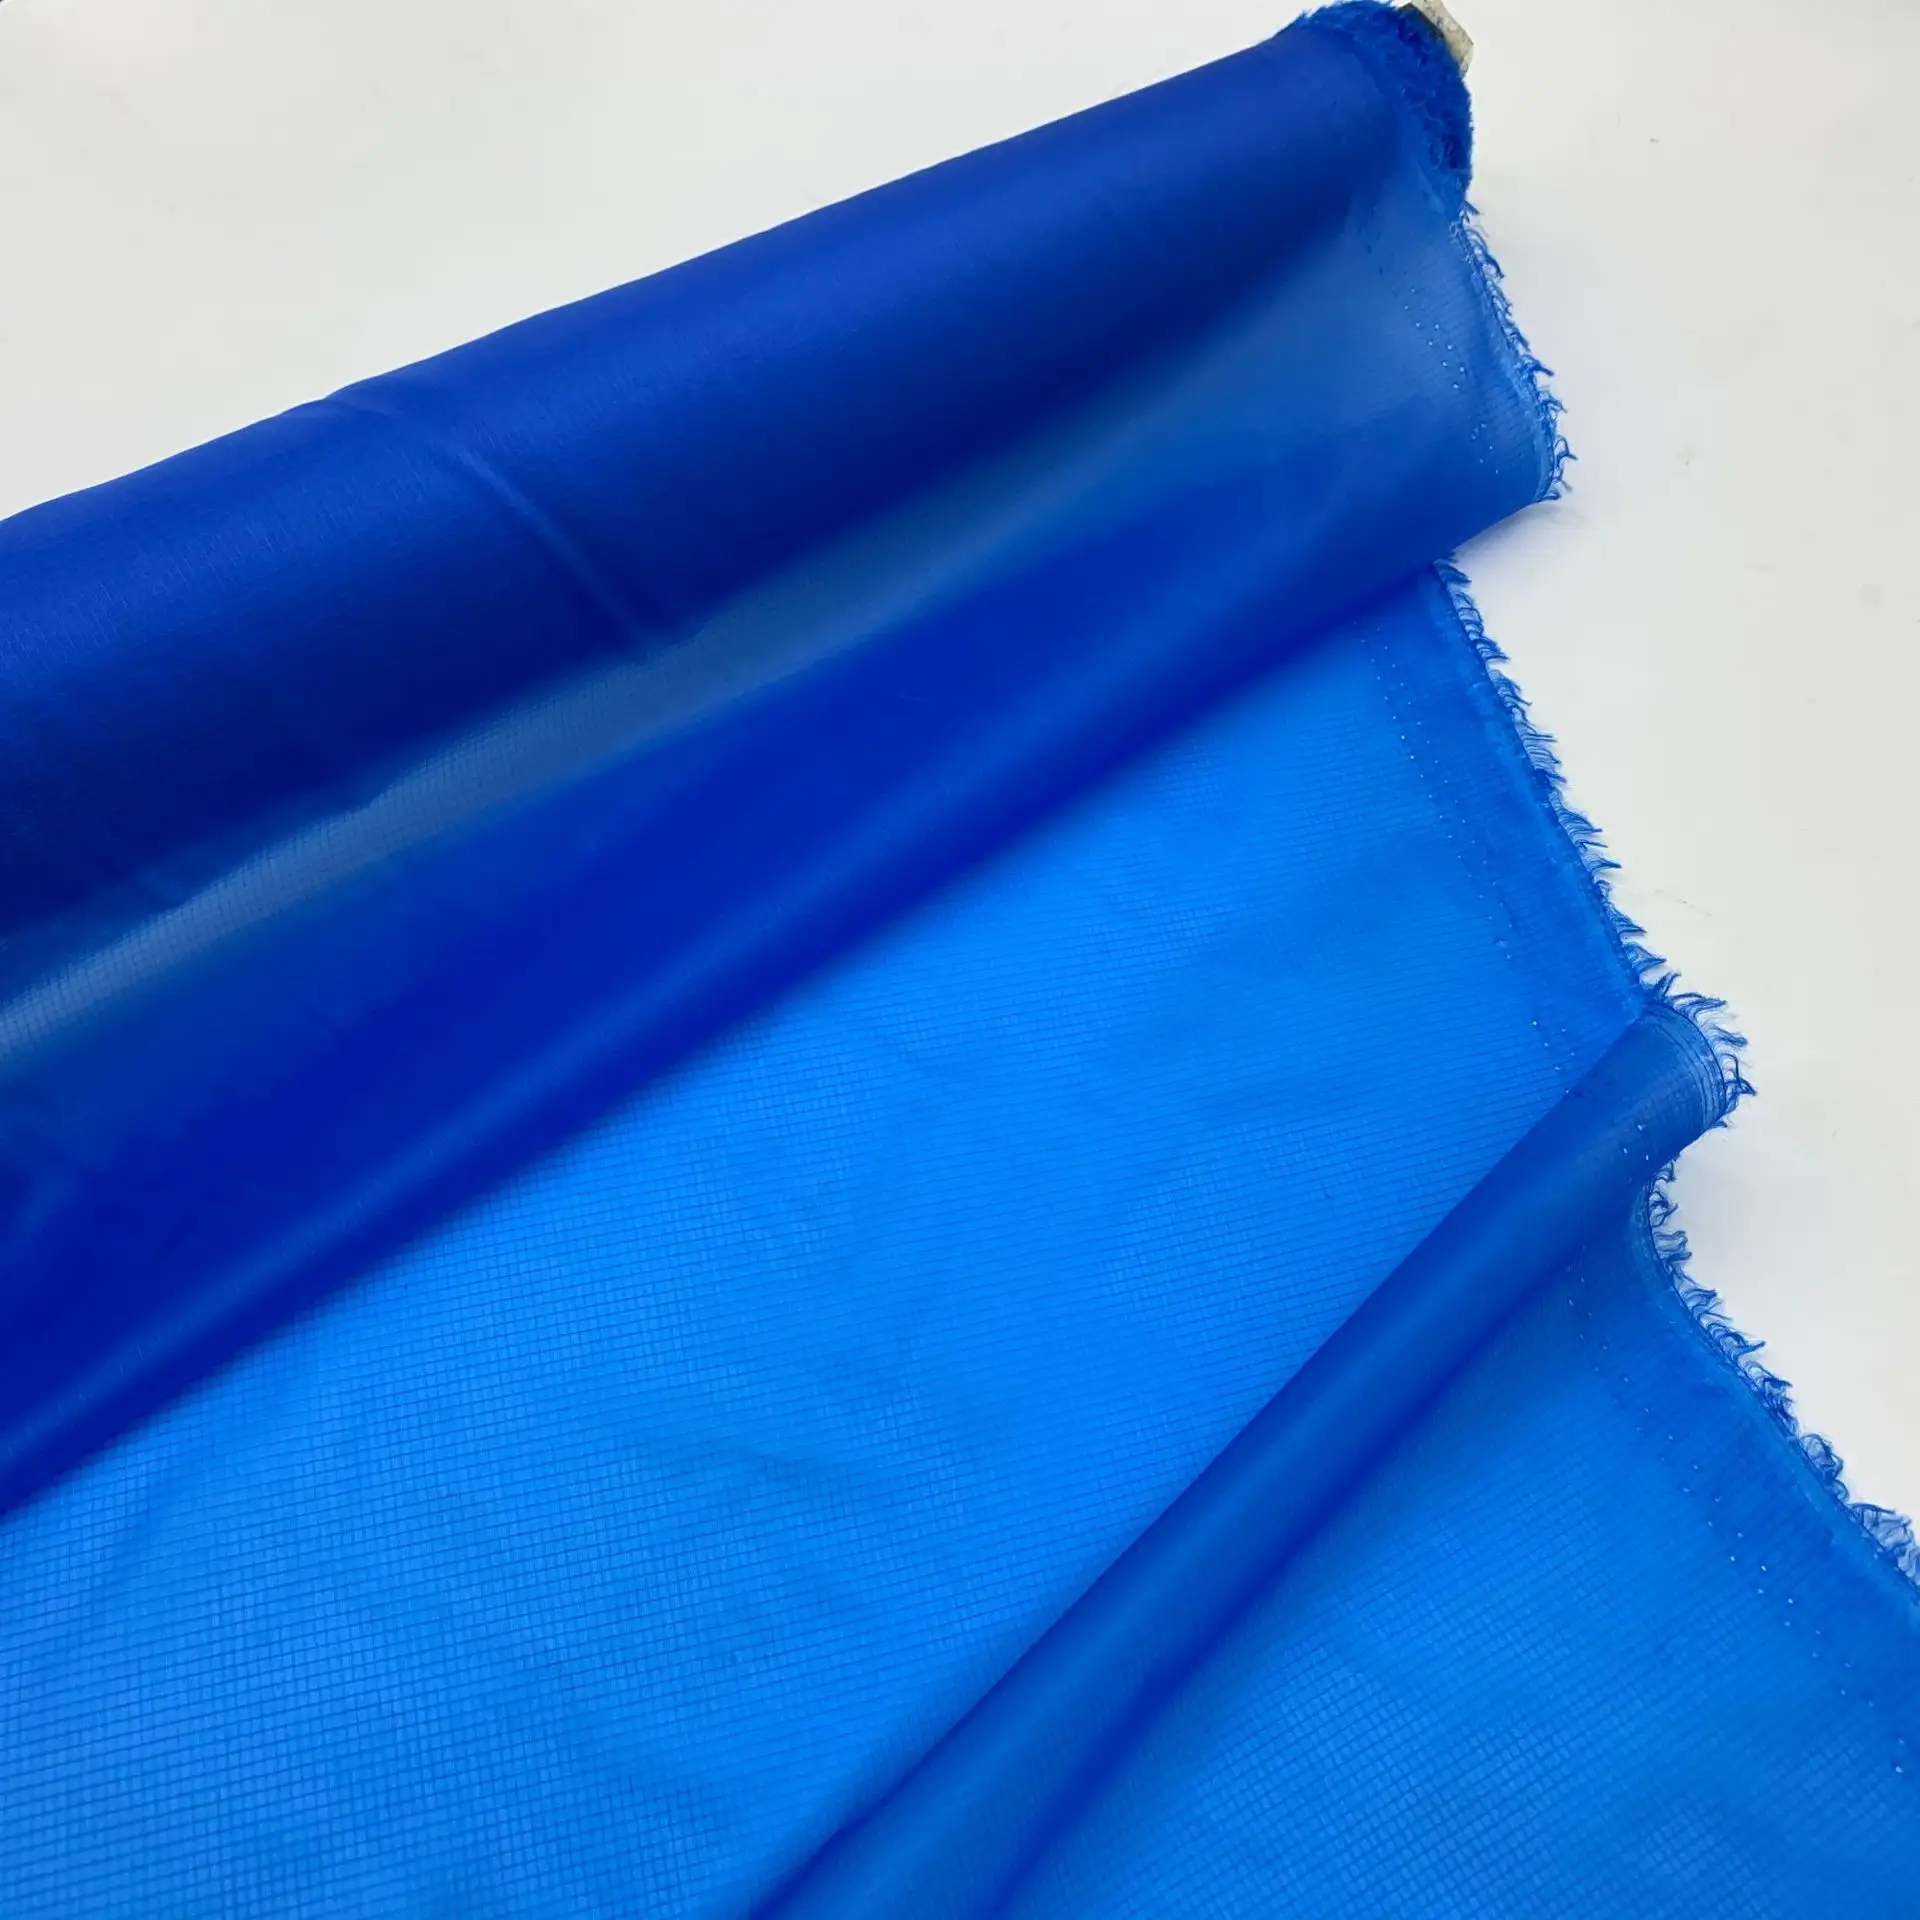 Nailon ripstop ultraligero con tela de nailon 10D impermeable a prueba de plumón para saco de dormir